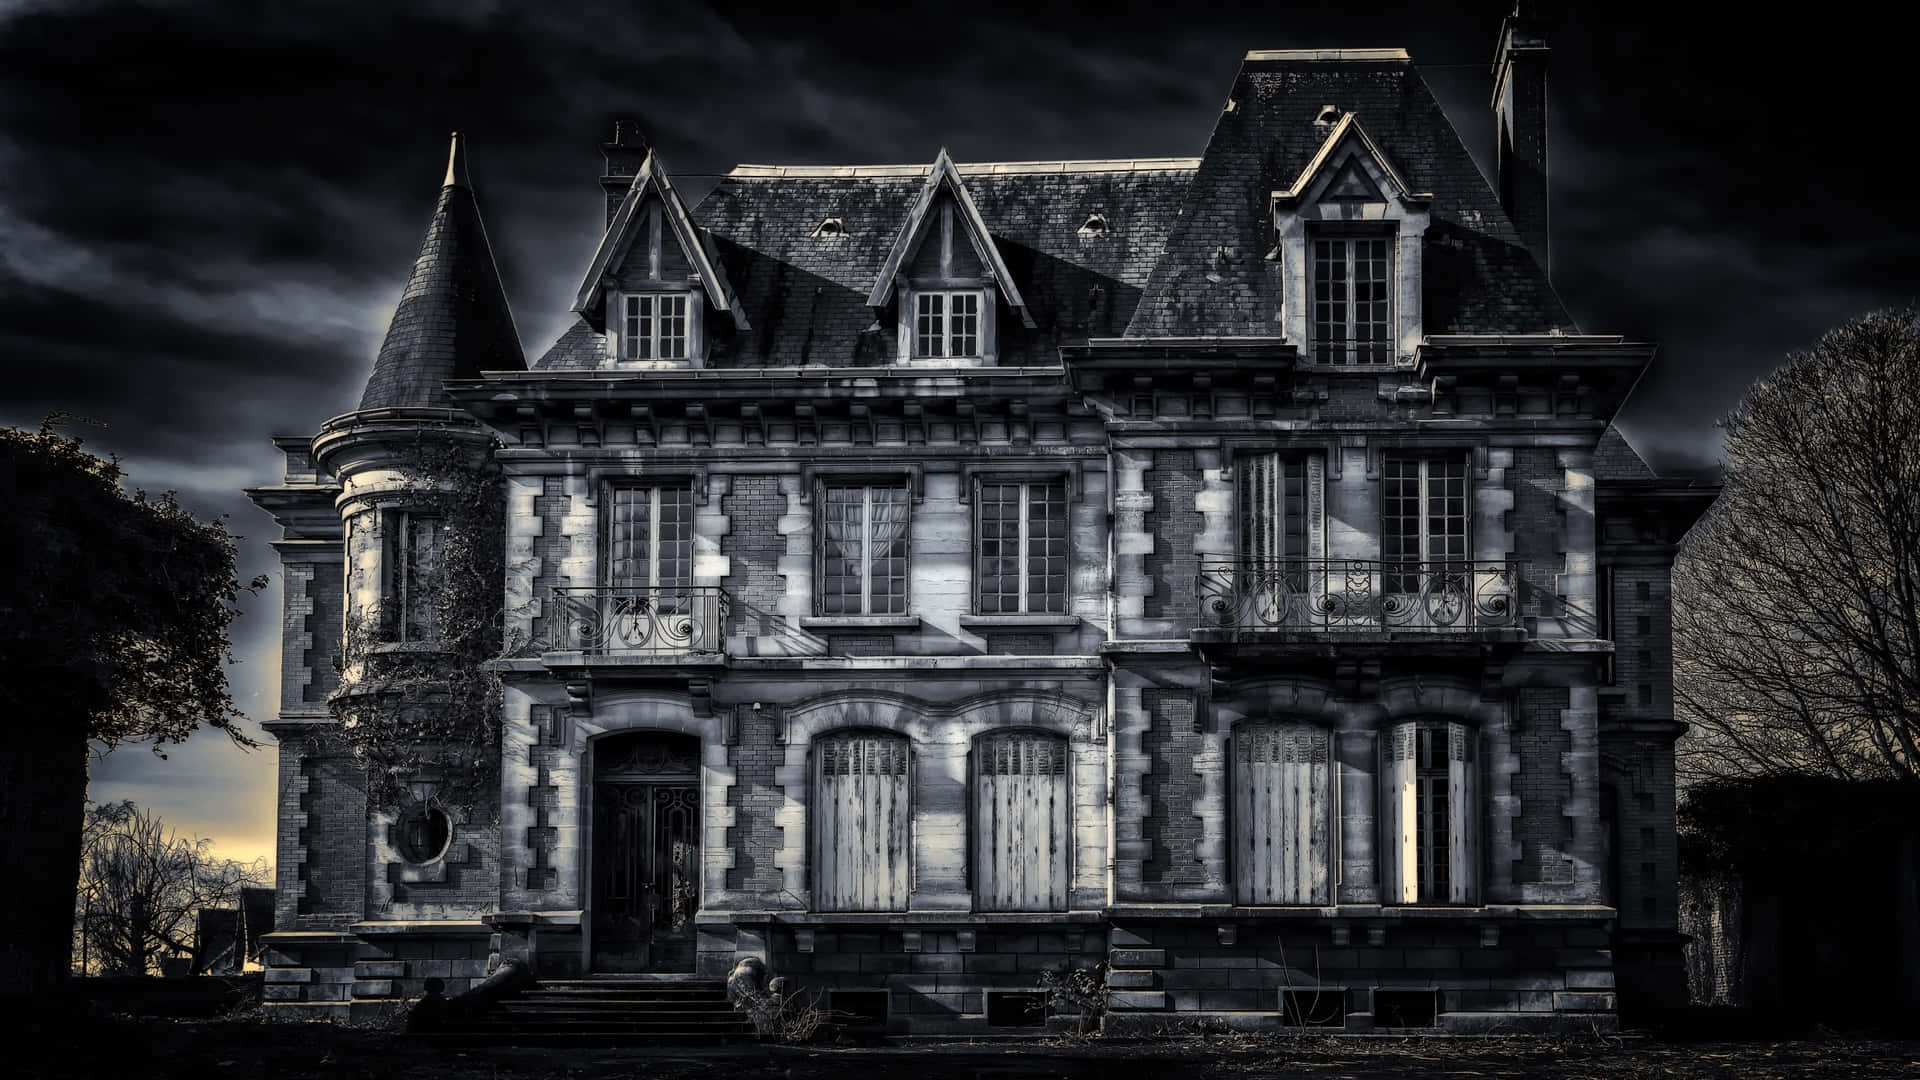 Imagende Una Casa Embrujada Con Fantasmas De Fantasía